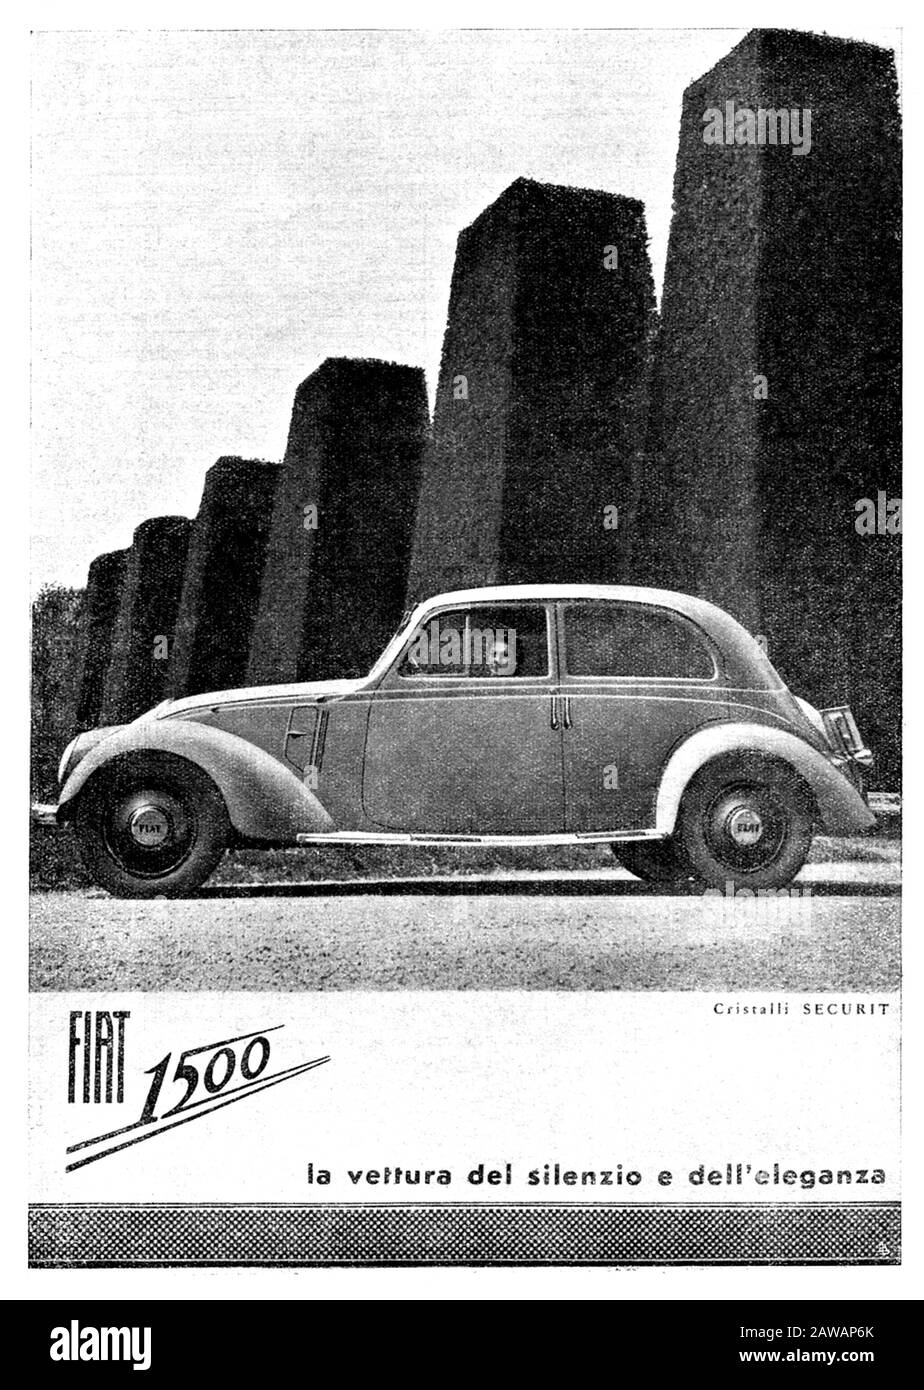 1930 ,TORINO ,  ITALY :  The italian car industry  FIAT ( F.I.A.T. Fabbrica Italiana Automobili Torino ) advertising for FIAT 1500 model .  - auto - a Stock Photo